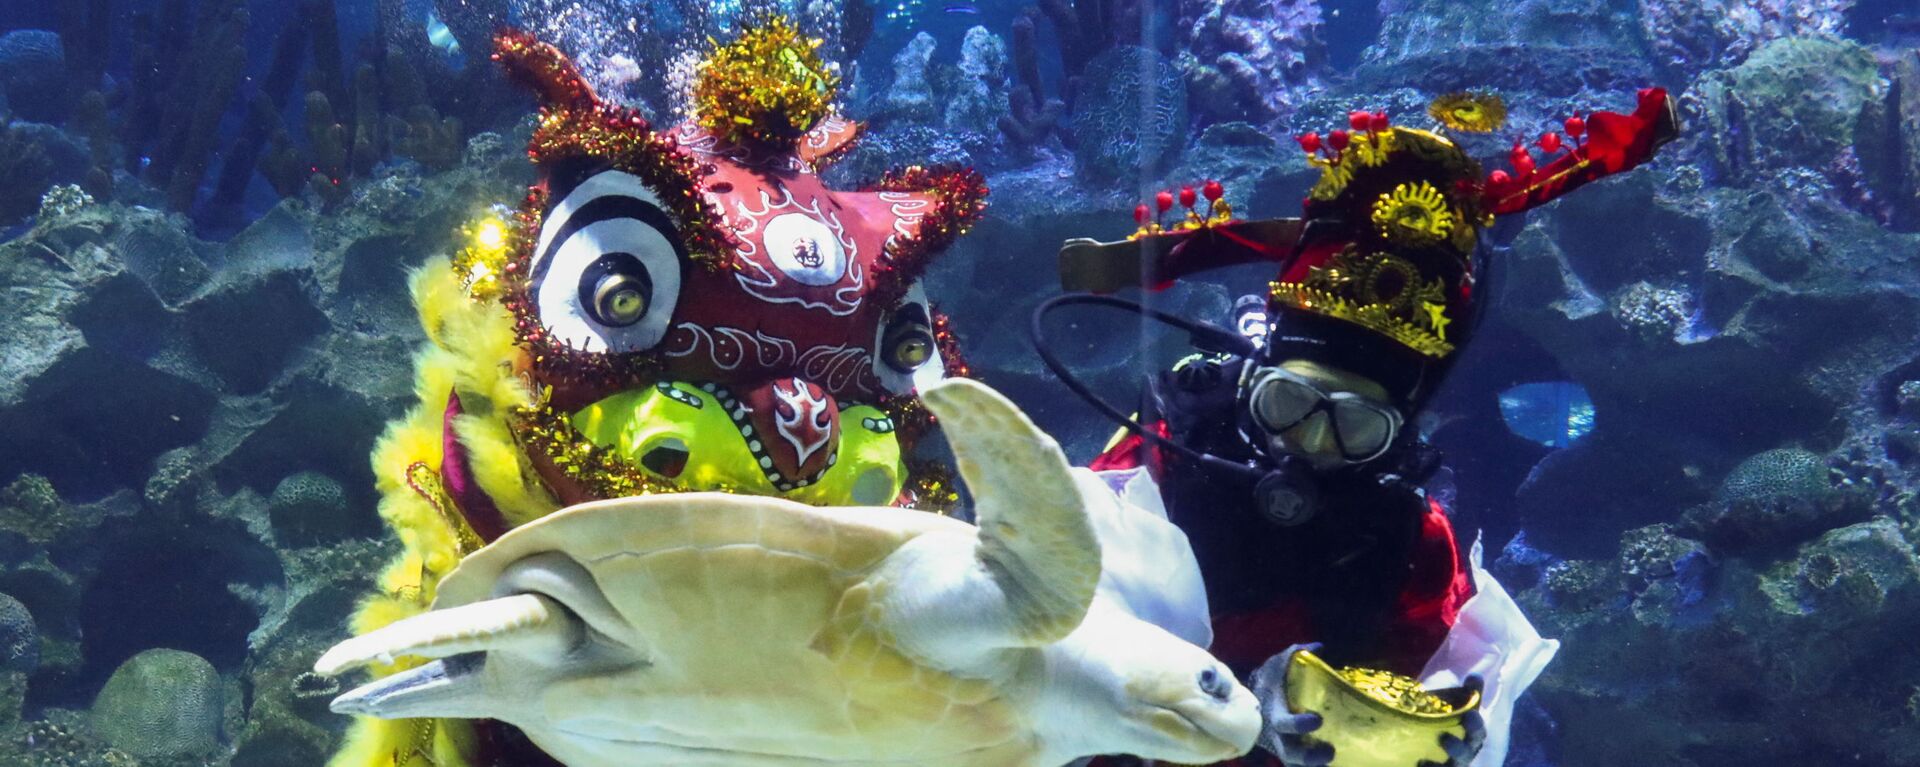  Дайверы в костюмах исполняют подводный танец льва в преддверии празднования китайского Лунного Нового года в Куала-Лумпуре - Sputnik Казахстан, 1920, 30.01.2022